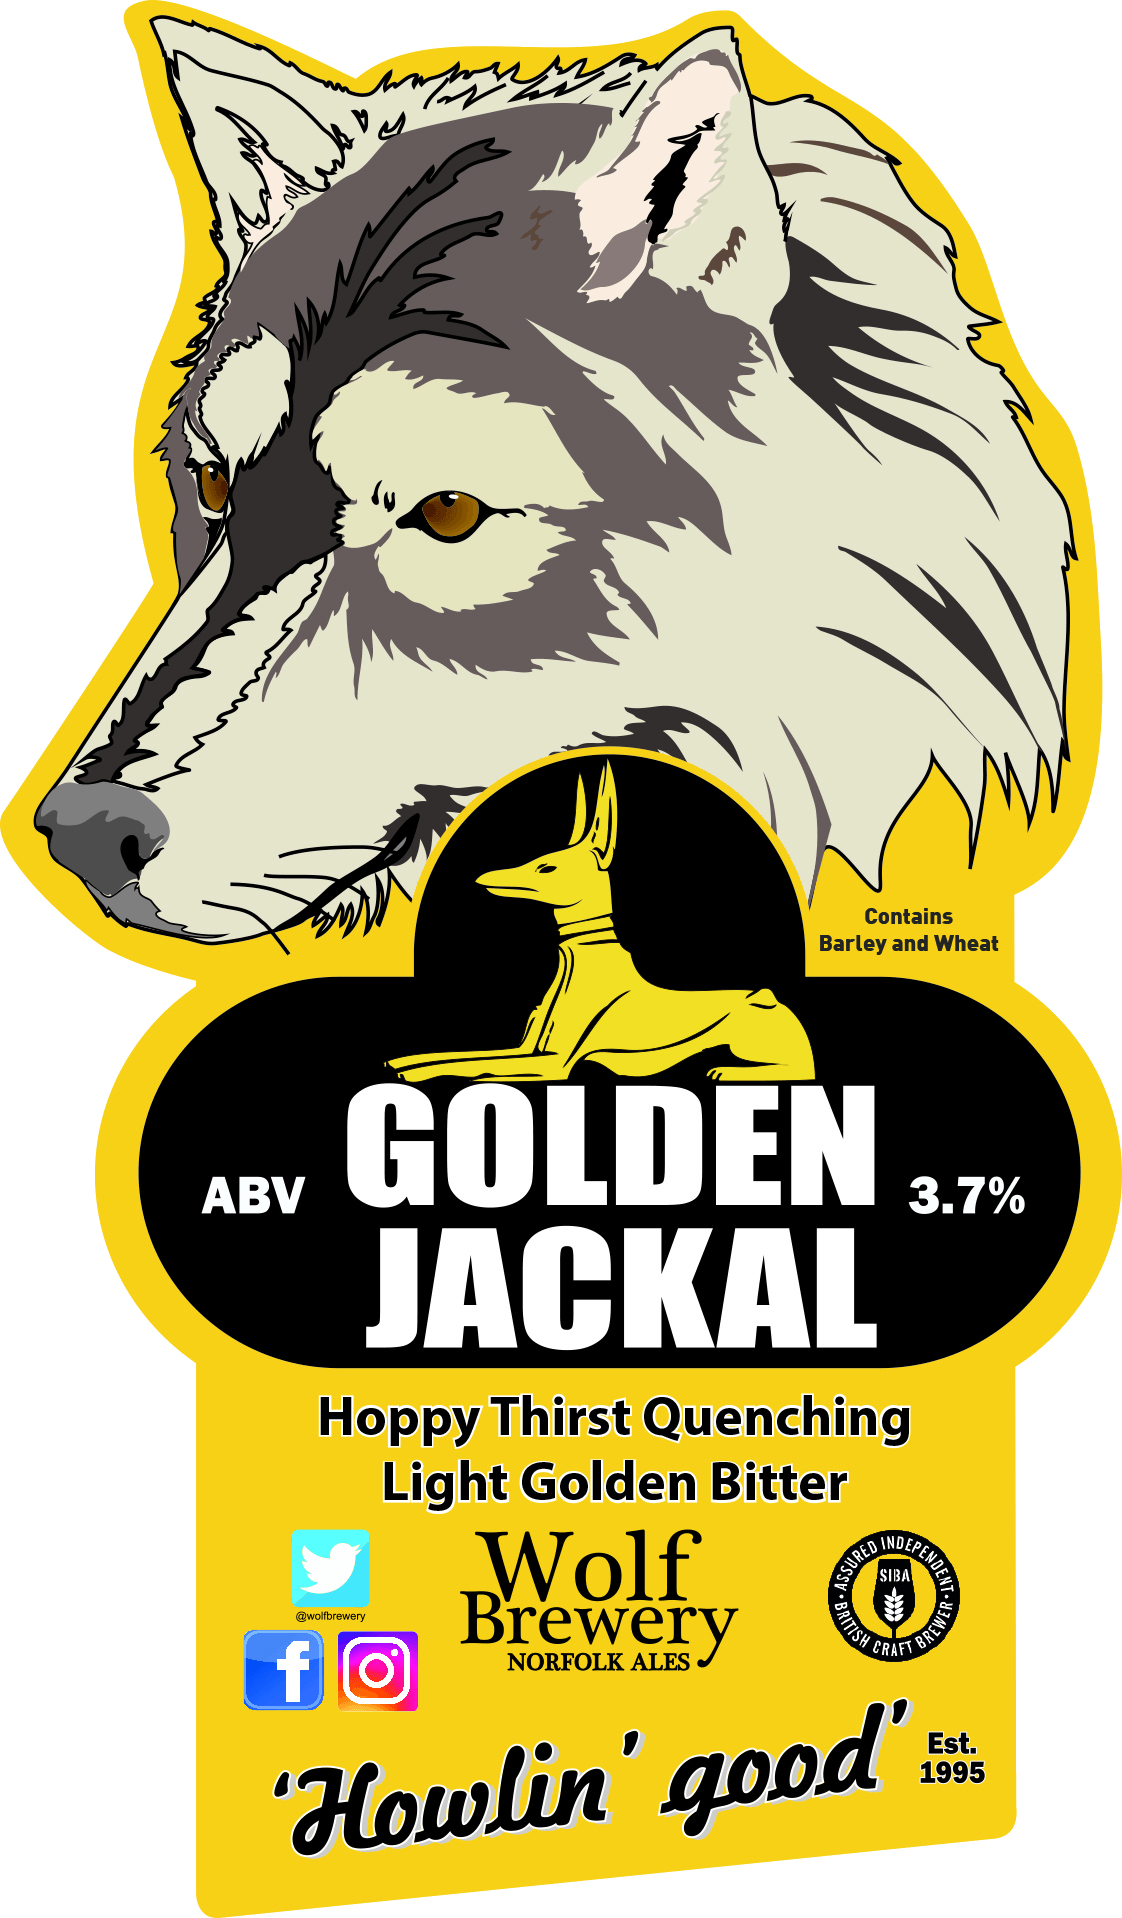 Golden Jackal beer